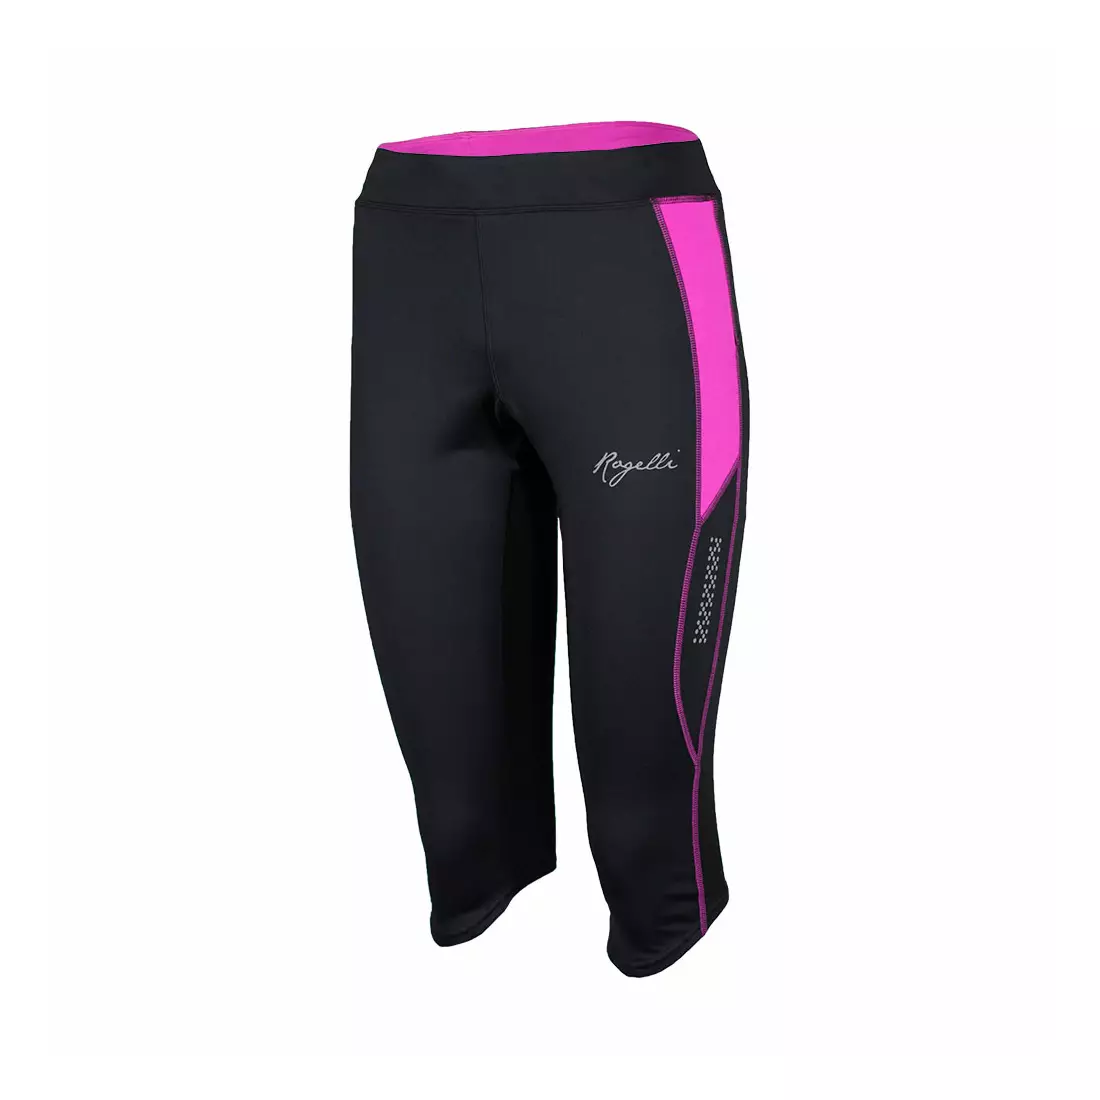 ROGELLI RUN CAPRI AIDA - women's running shorts 840.751, black and pink